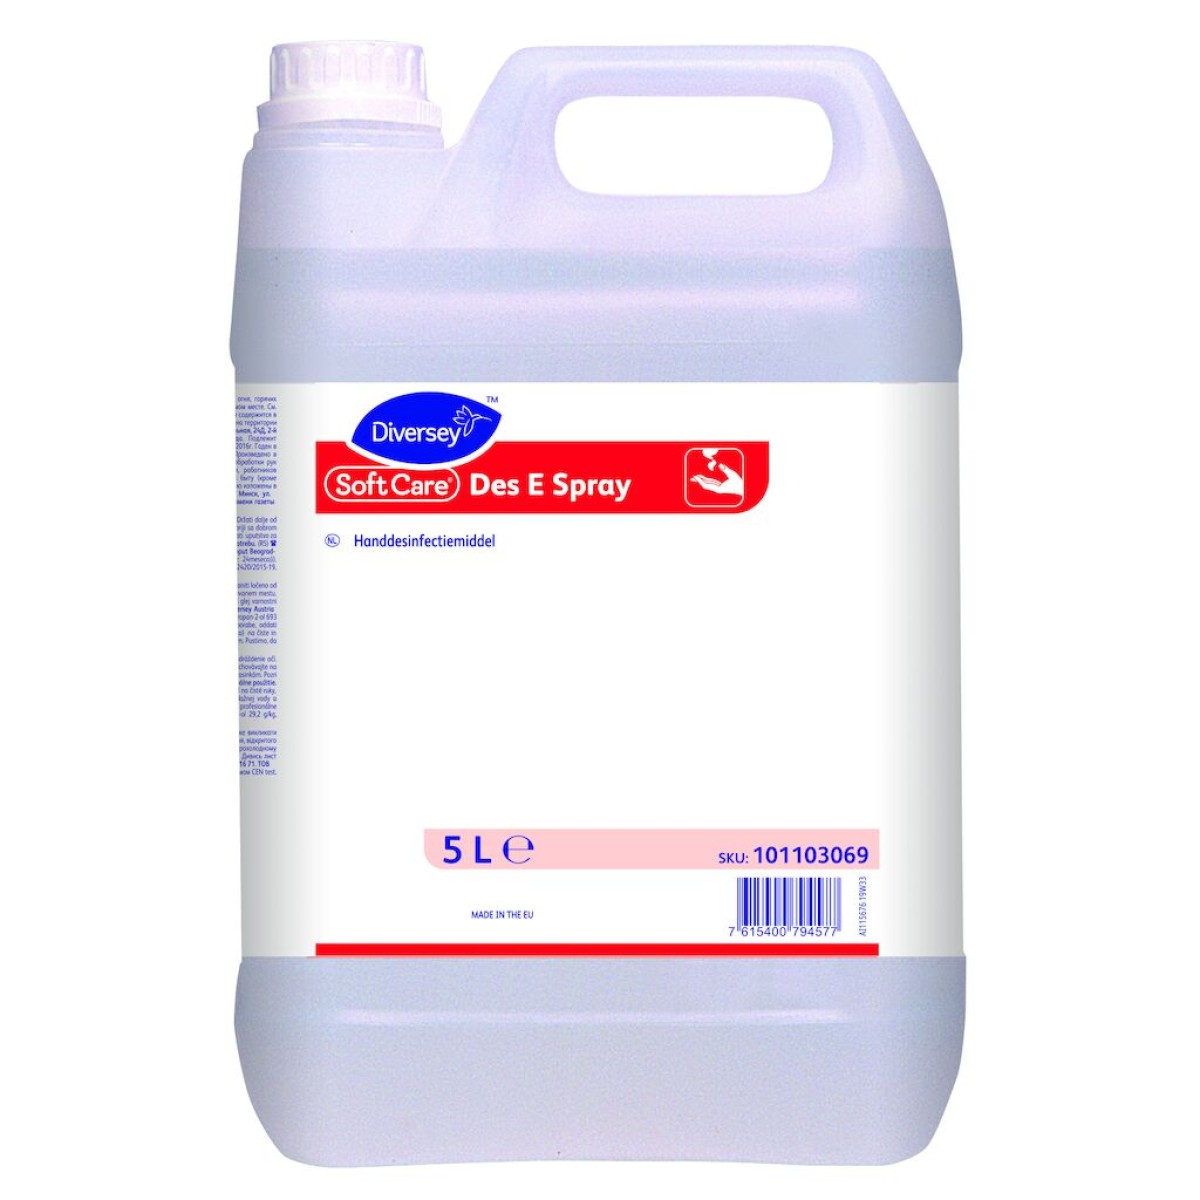 Diversey Soft Care Des E Spray H5, 5 liter